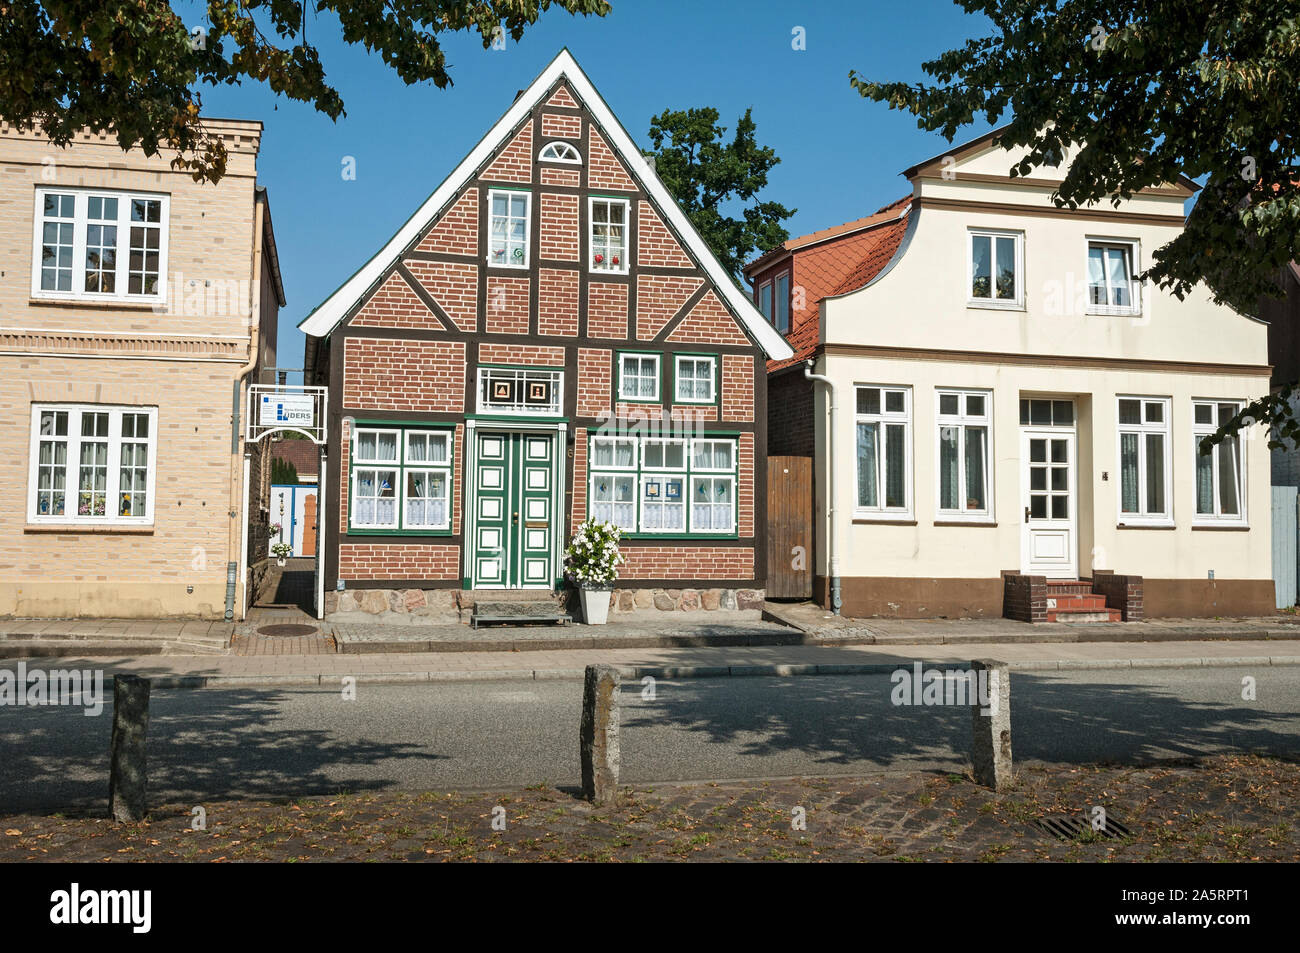 Maisons de la vieille ville (Altstadt), Travemünde, Luebeck, Allemagne. Banque D'Images